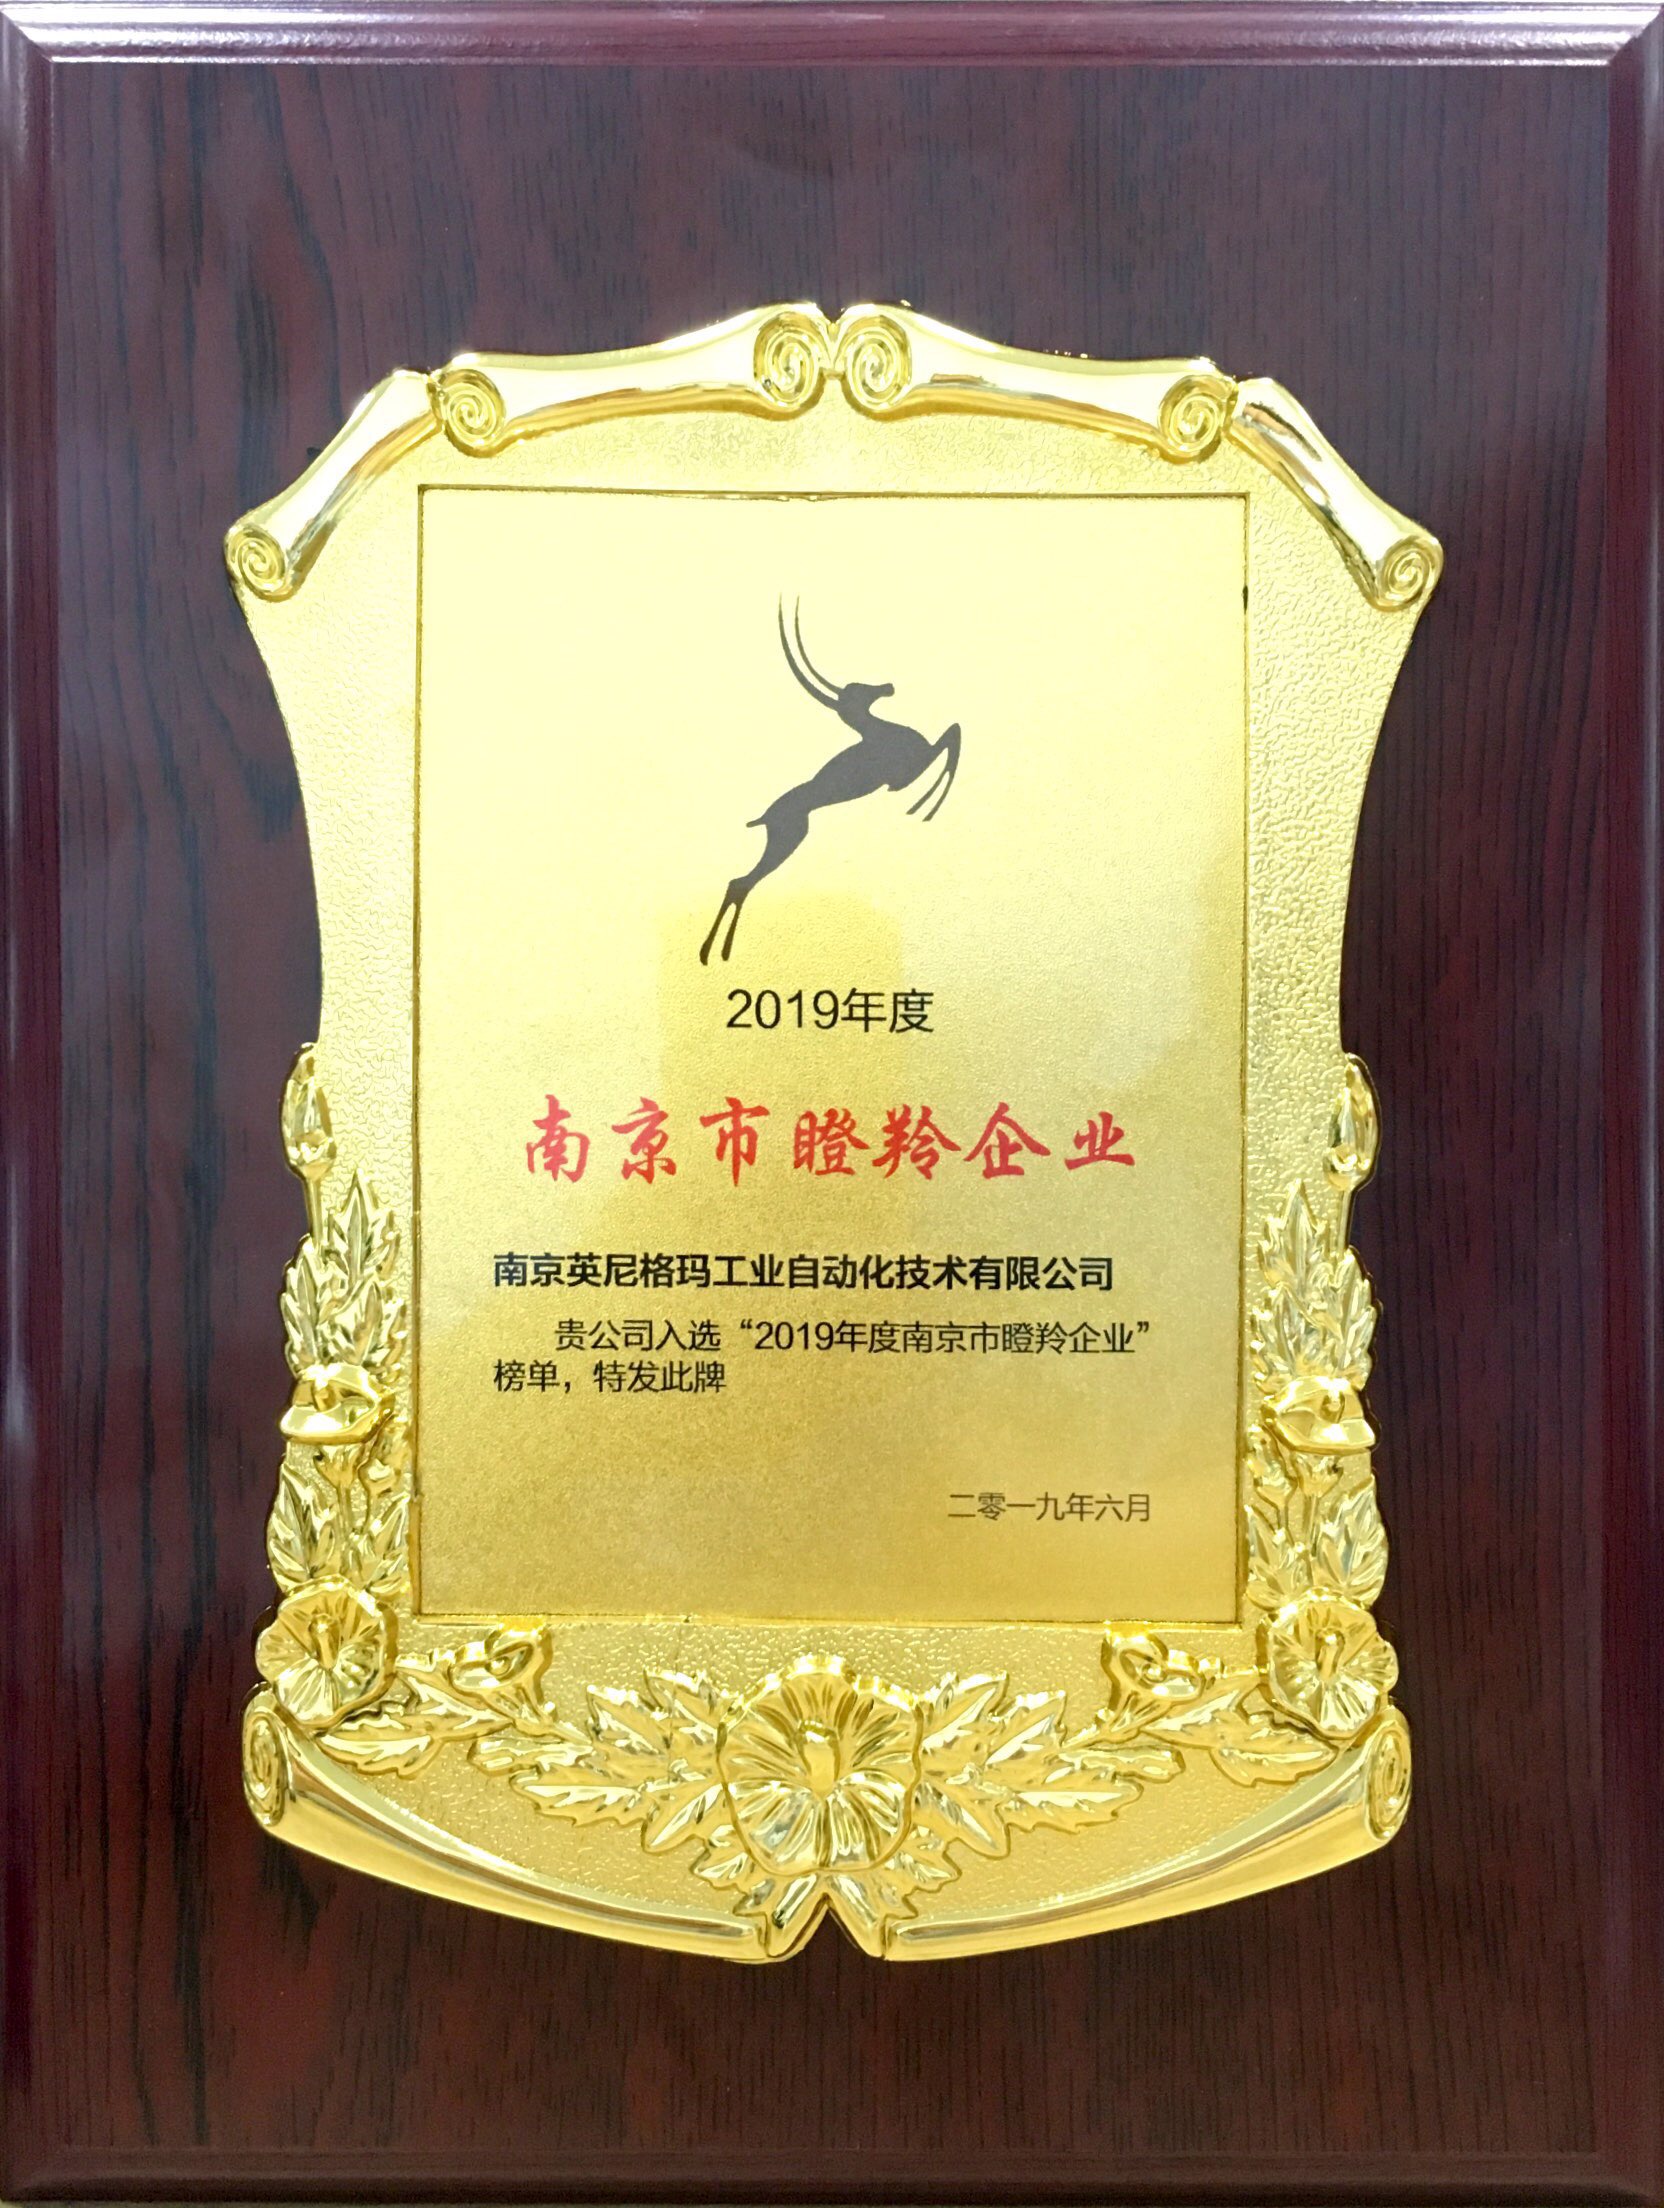 英尼格玛荣誉-瞪羚企业证书.jpg